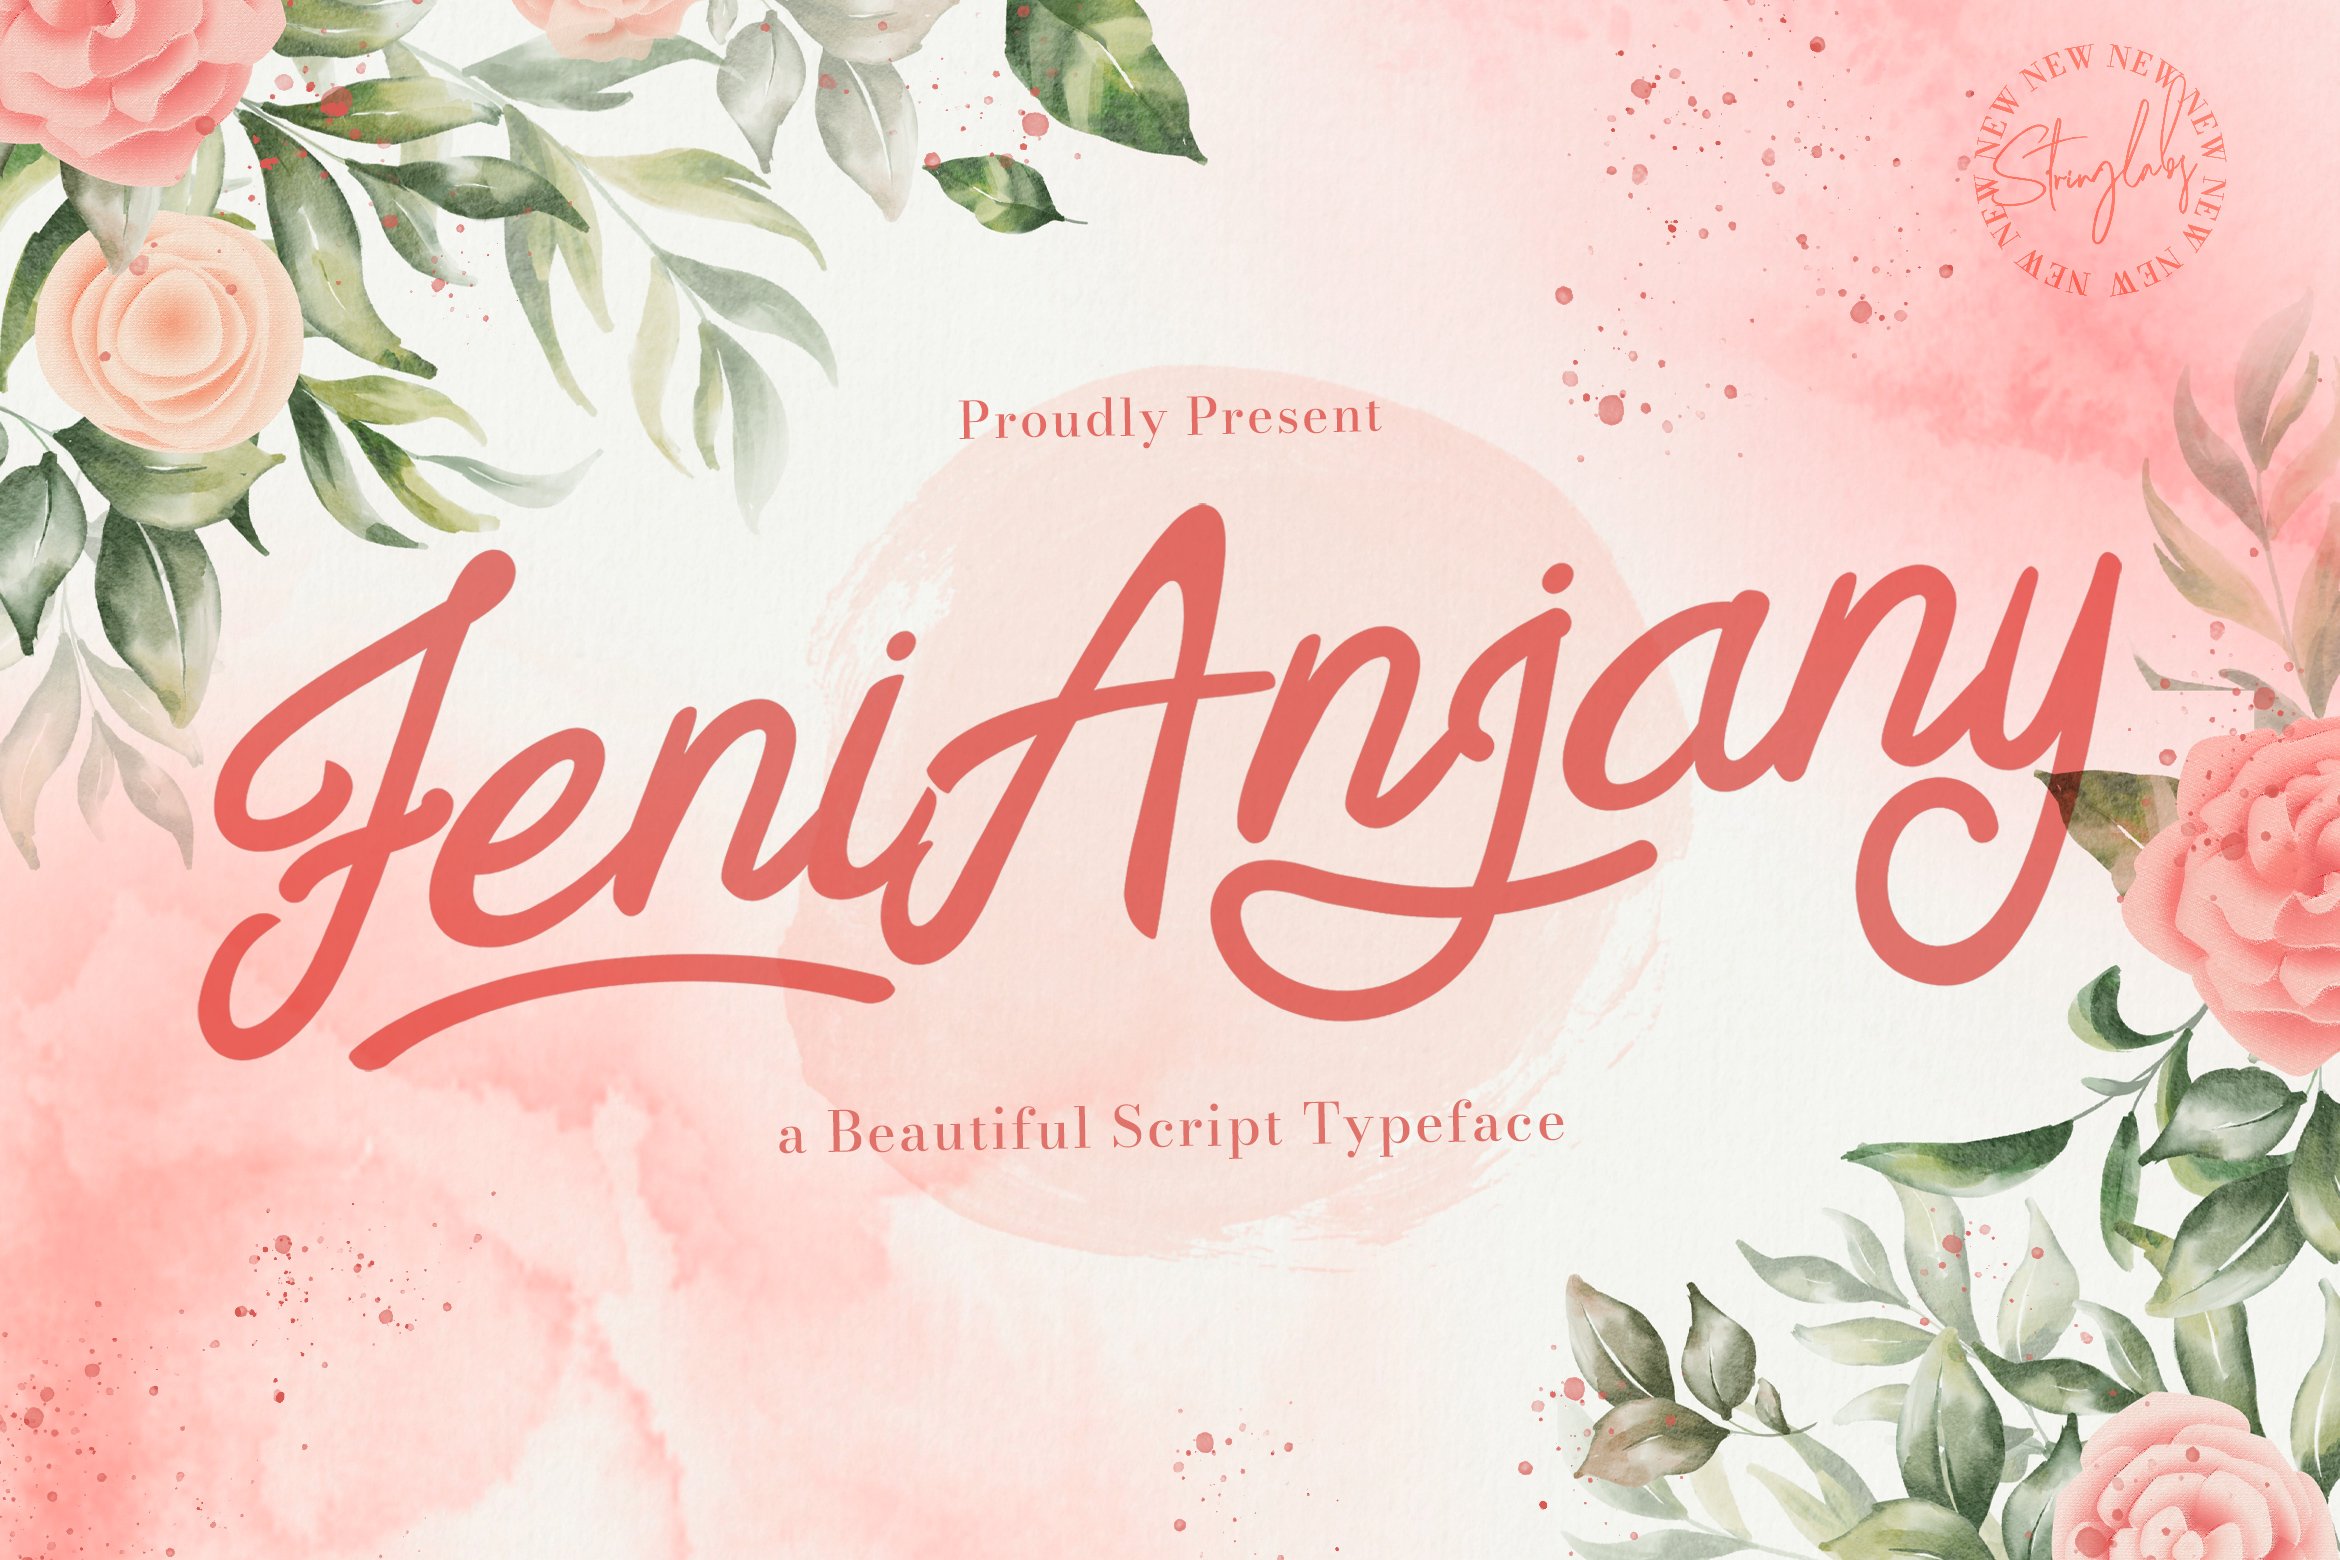 Feny Anjany - Handwritten Font cover image.